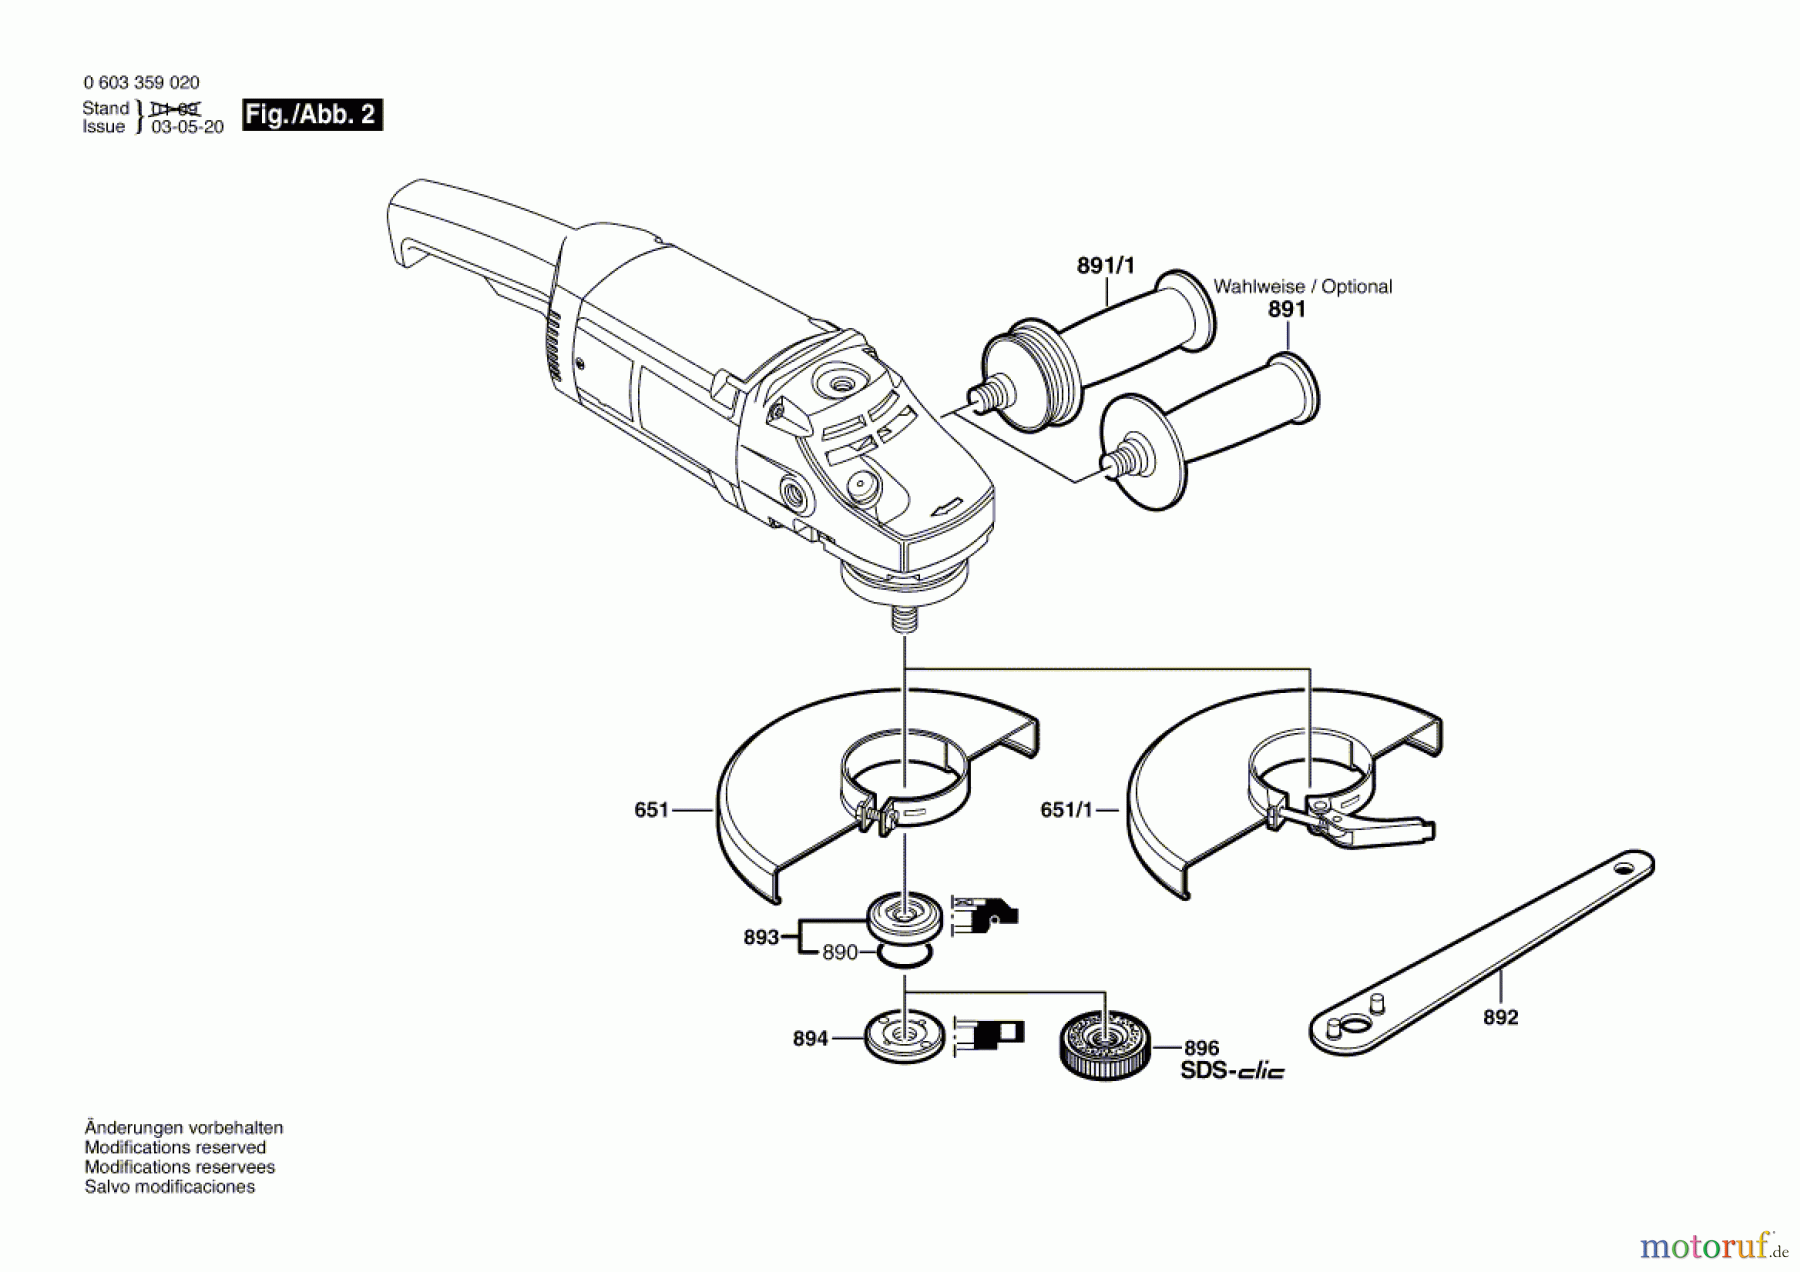  Bosch Werkzeug Winkelschleifer PWS 1900 Seite 2